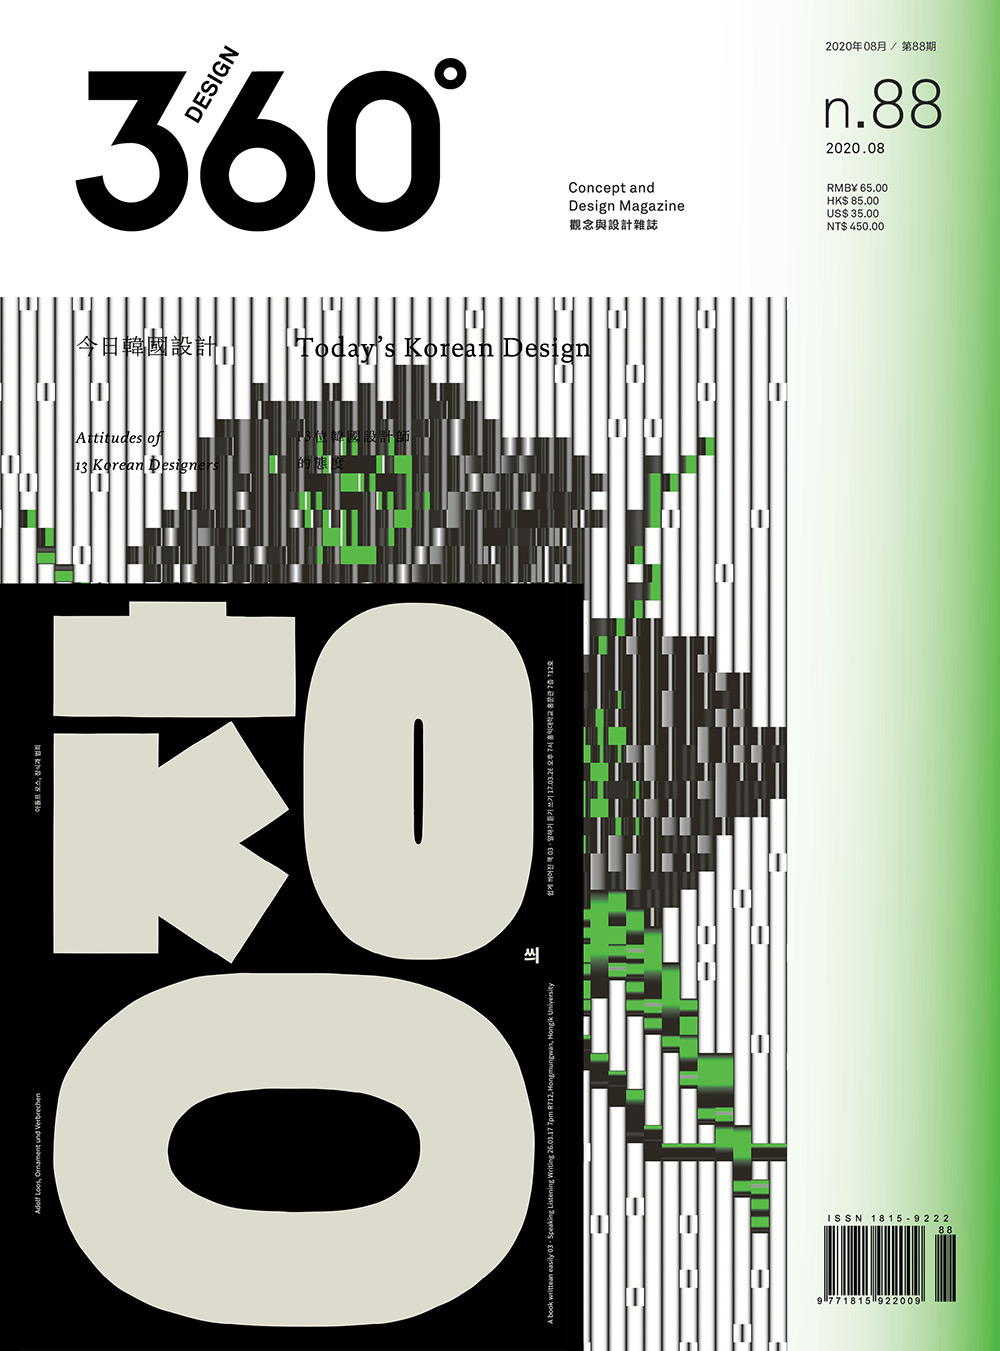 精致设计！12款杂志《Design 360°》封面作品